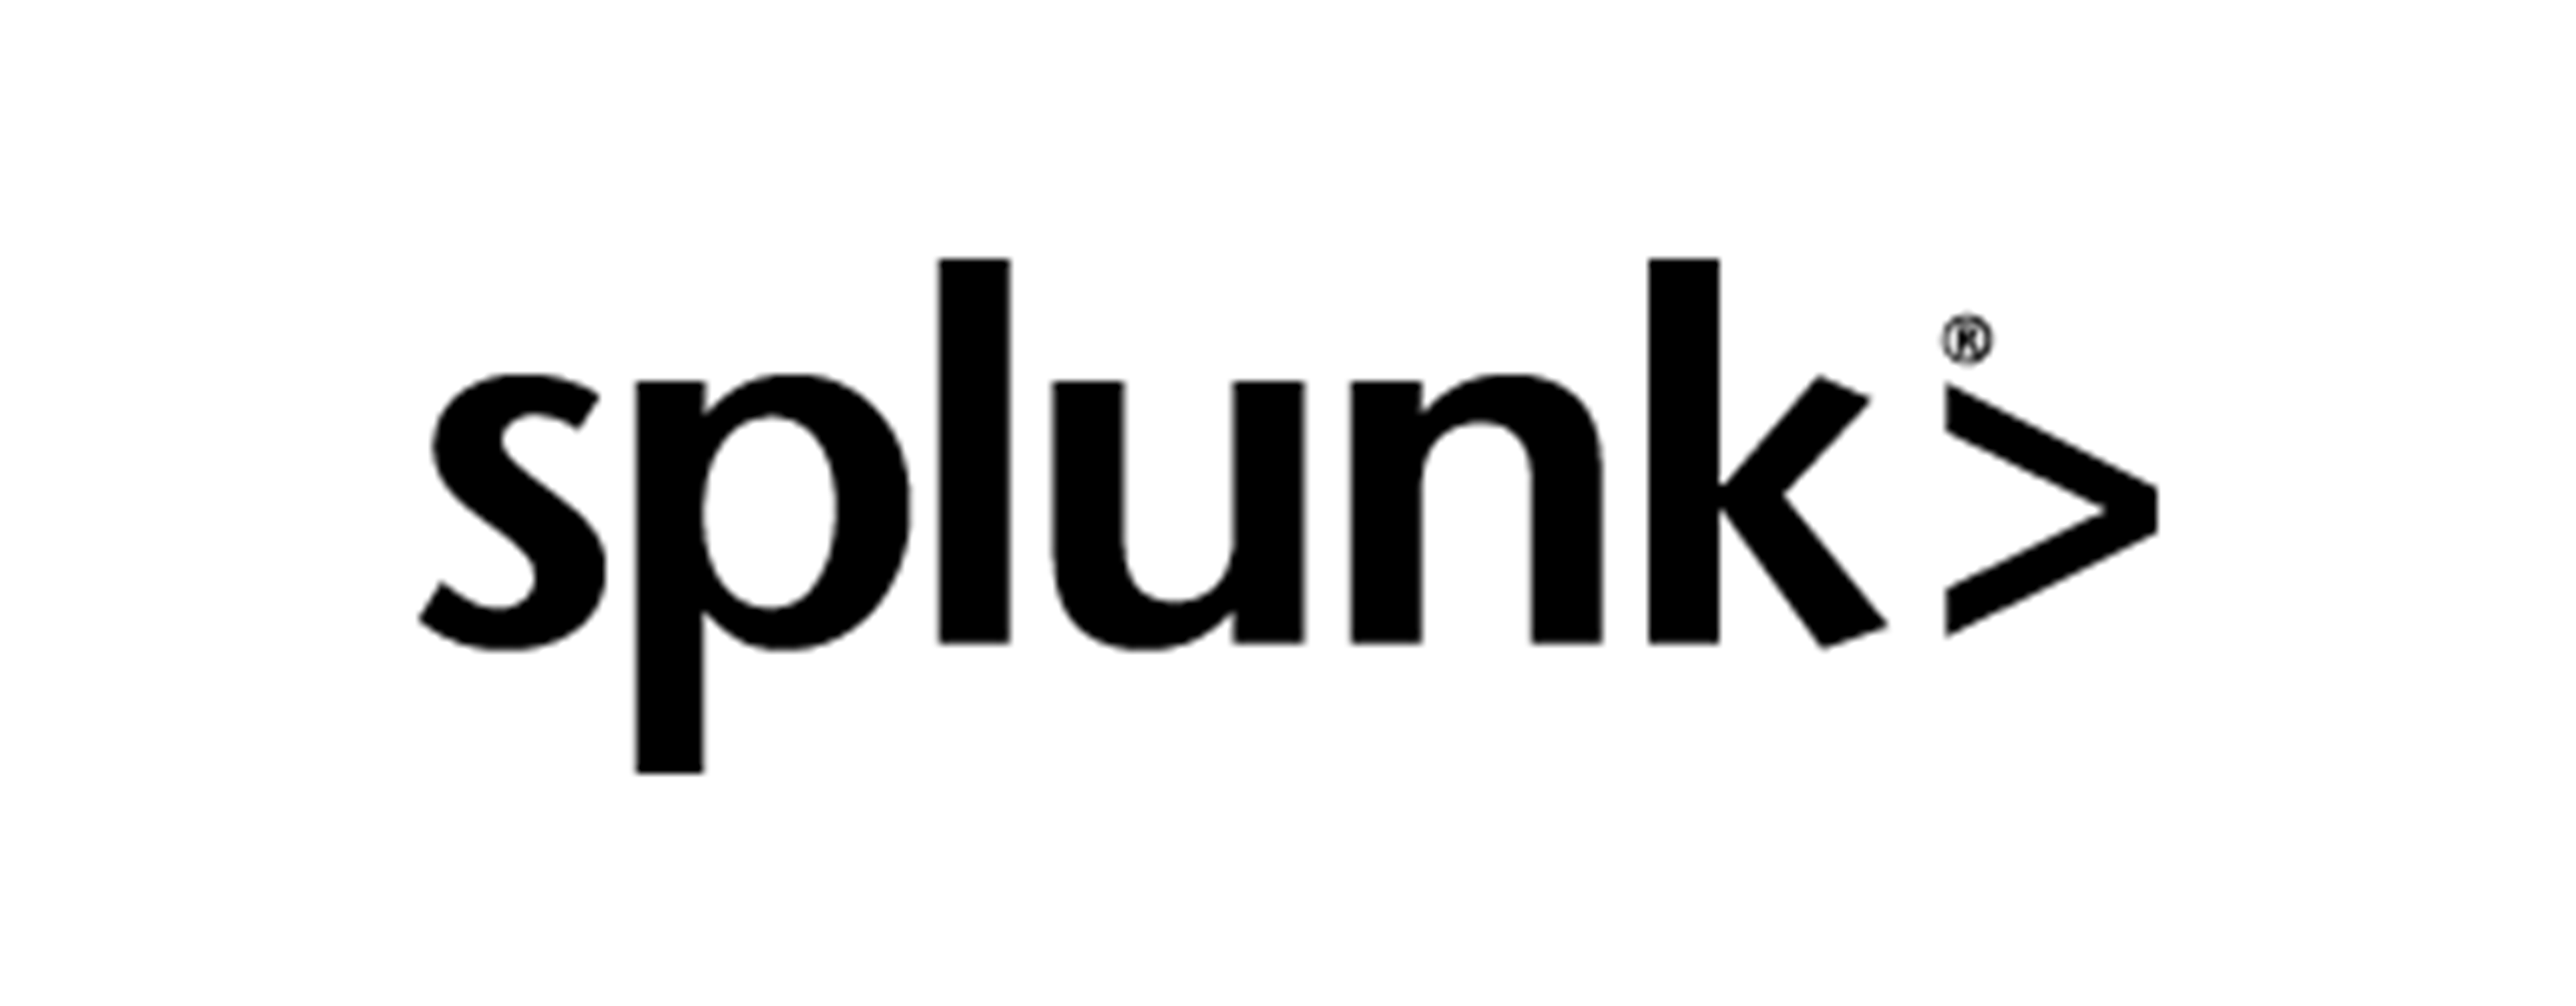 
            Splunkのロゴ
        